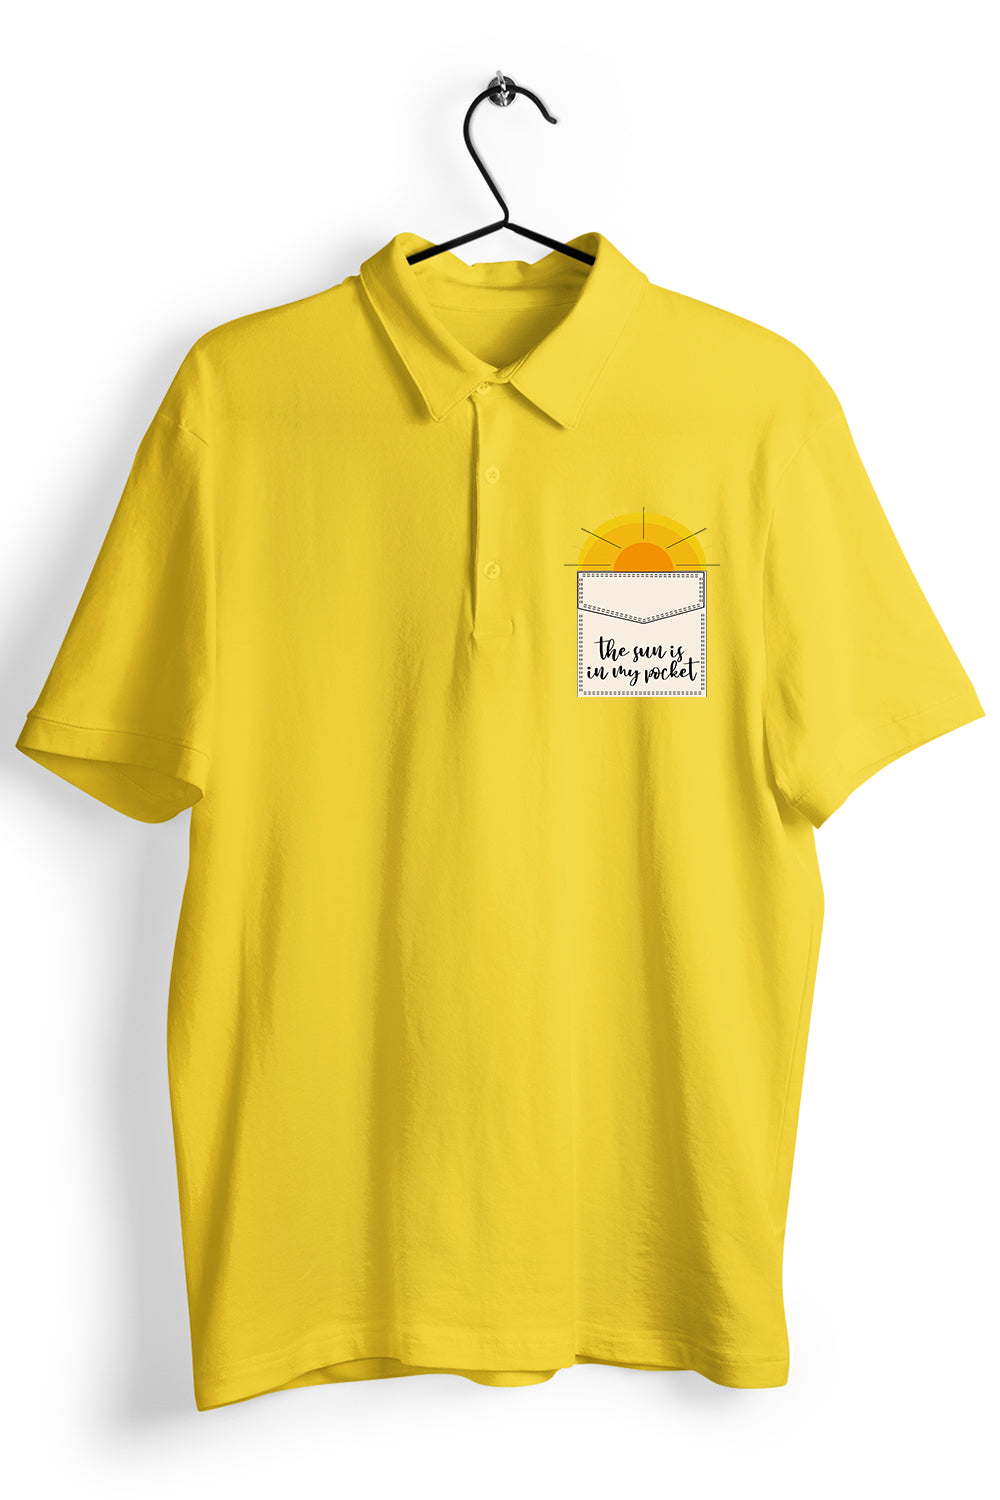 Sun Shine Pocket Graphic Pocket Printed Yellow Polo Shirt